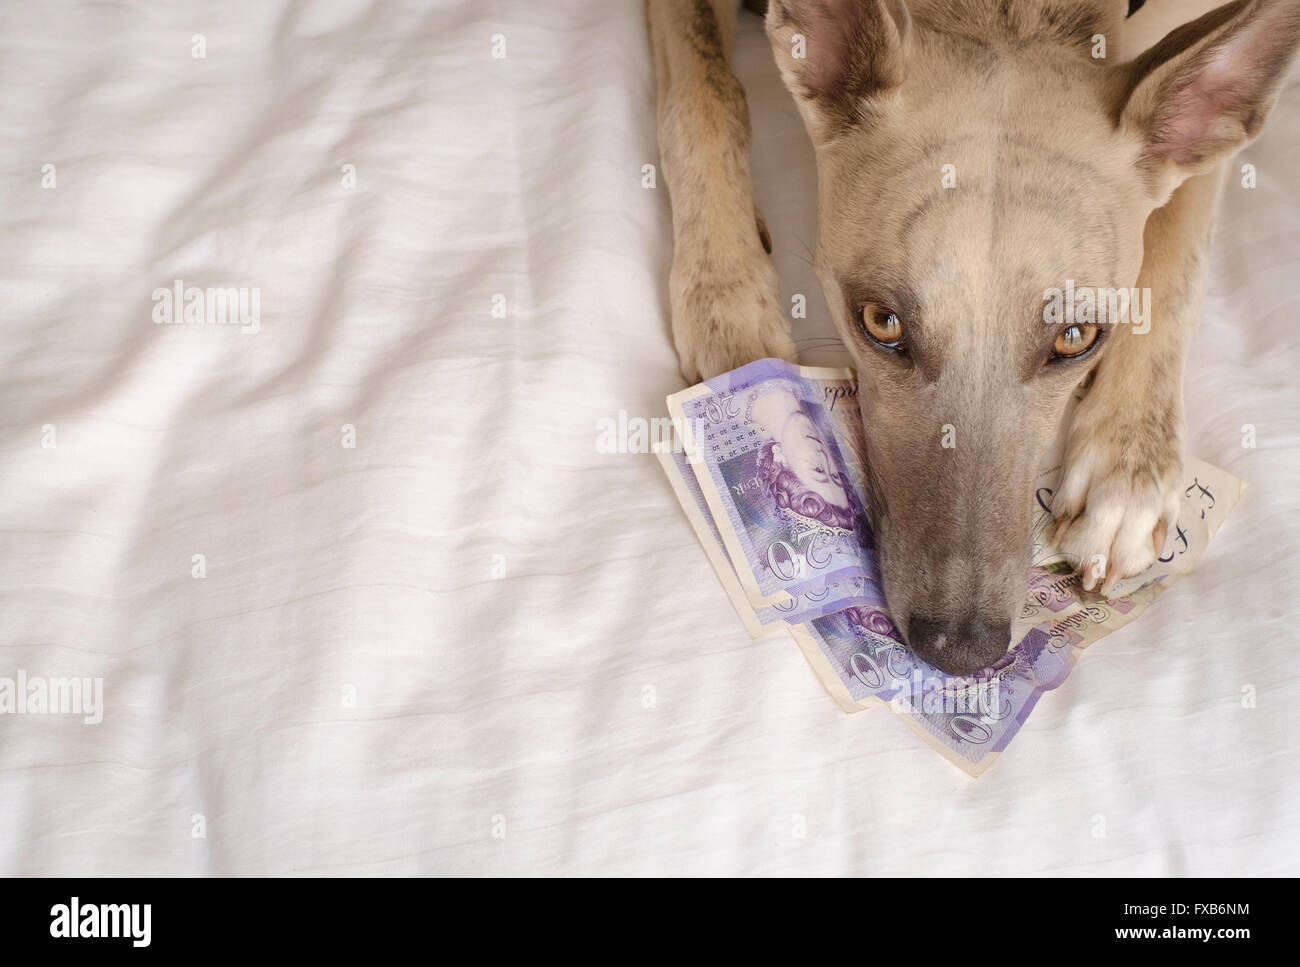 Dog lying on large sum of money looking sad Stock Photo